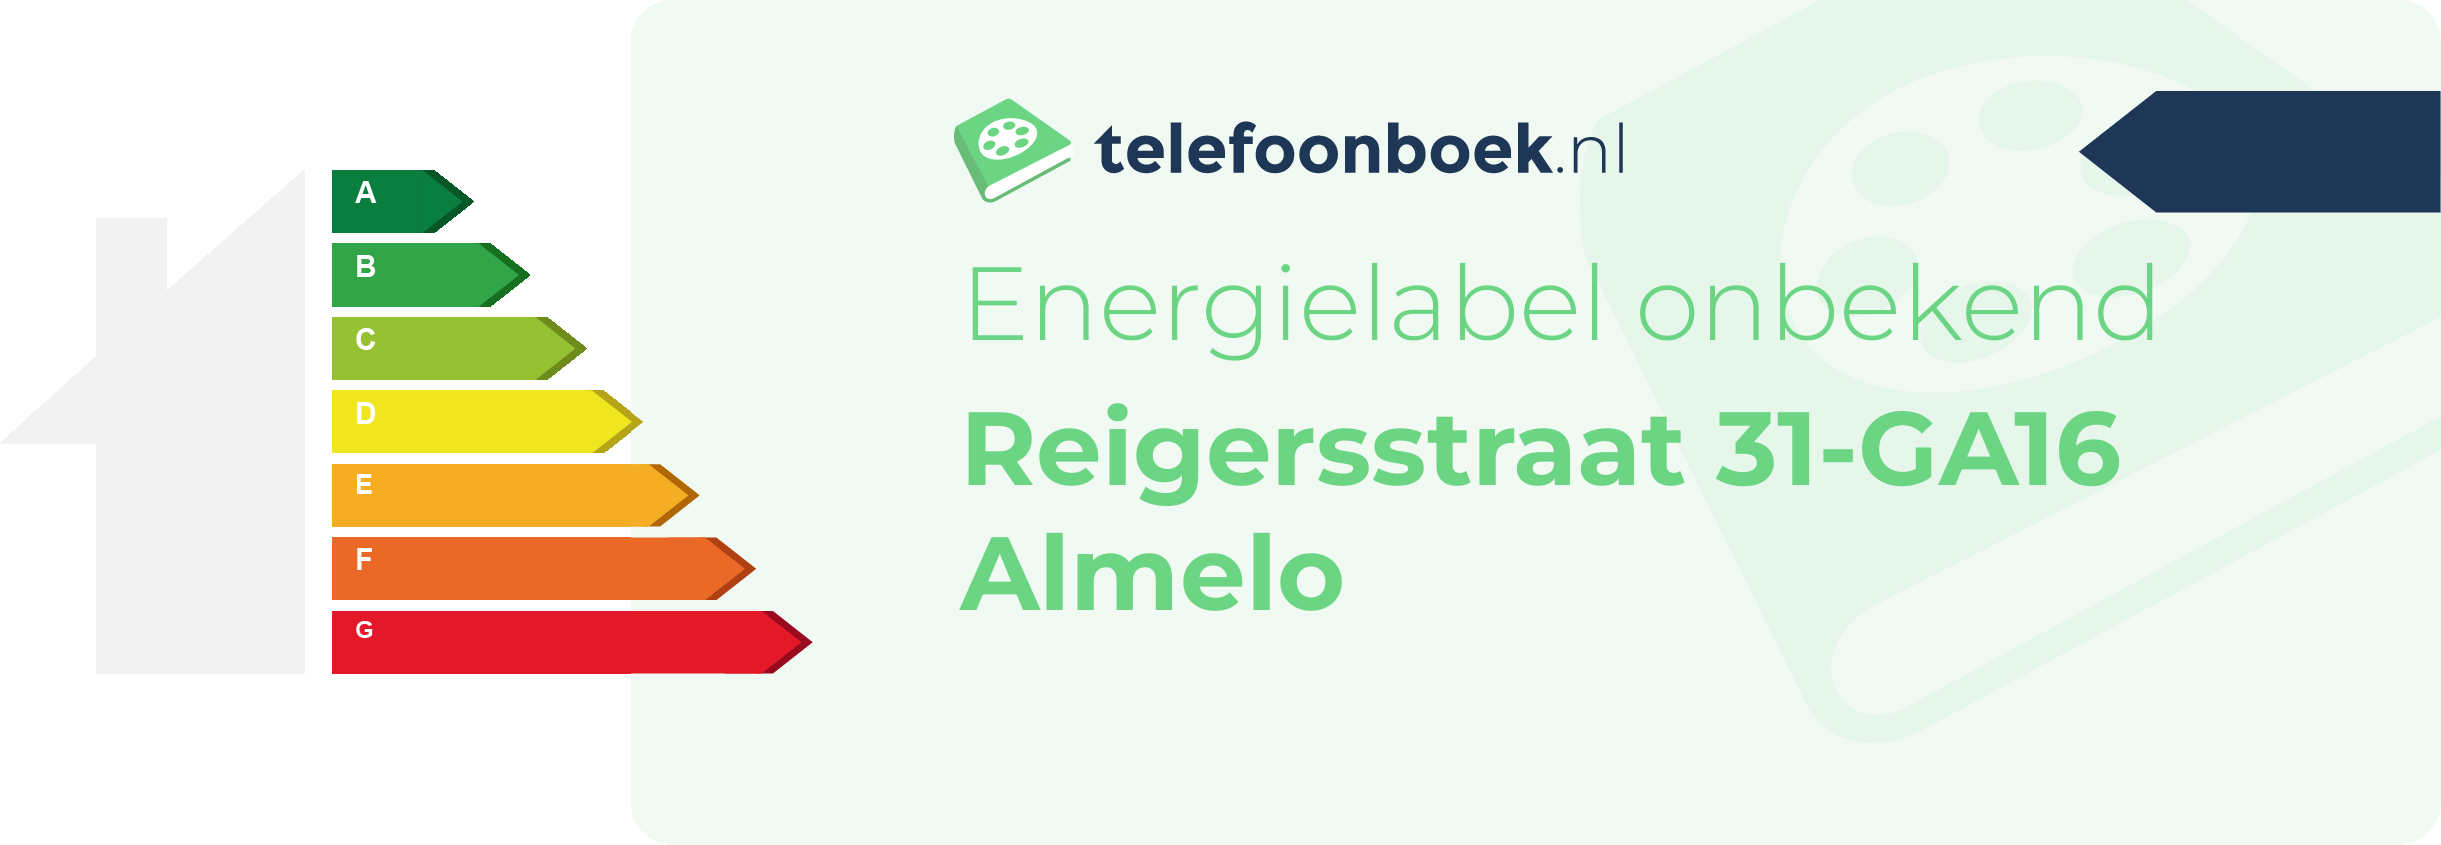 Energielabel Reigersstraat 31-GA16 Almelo